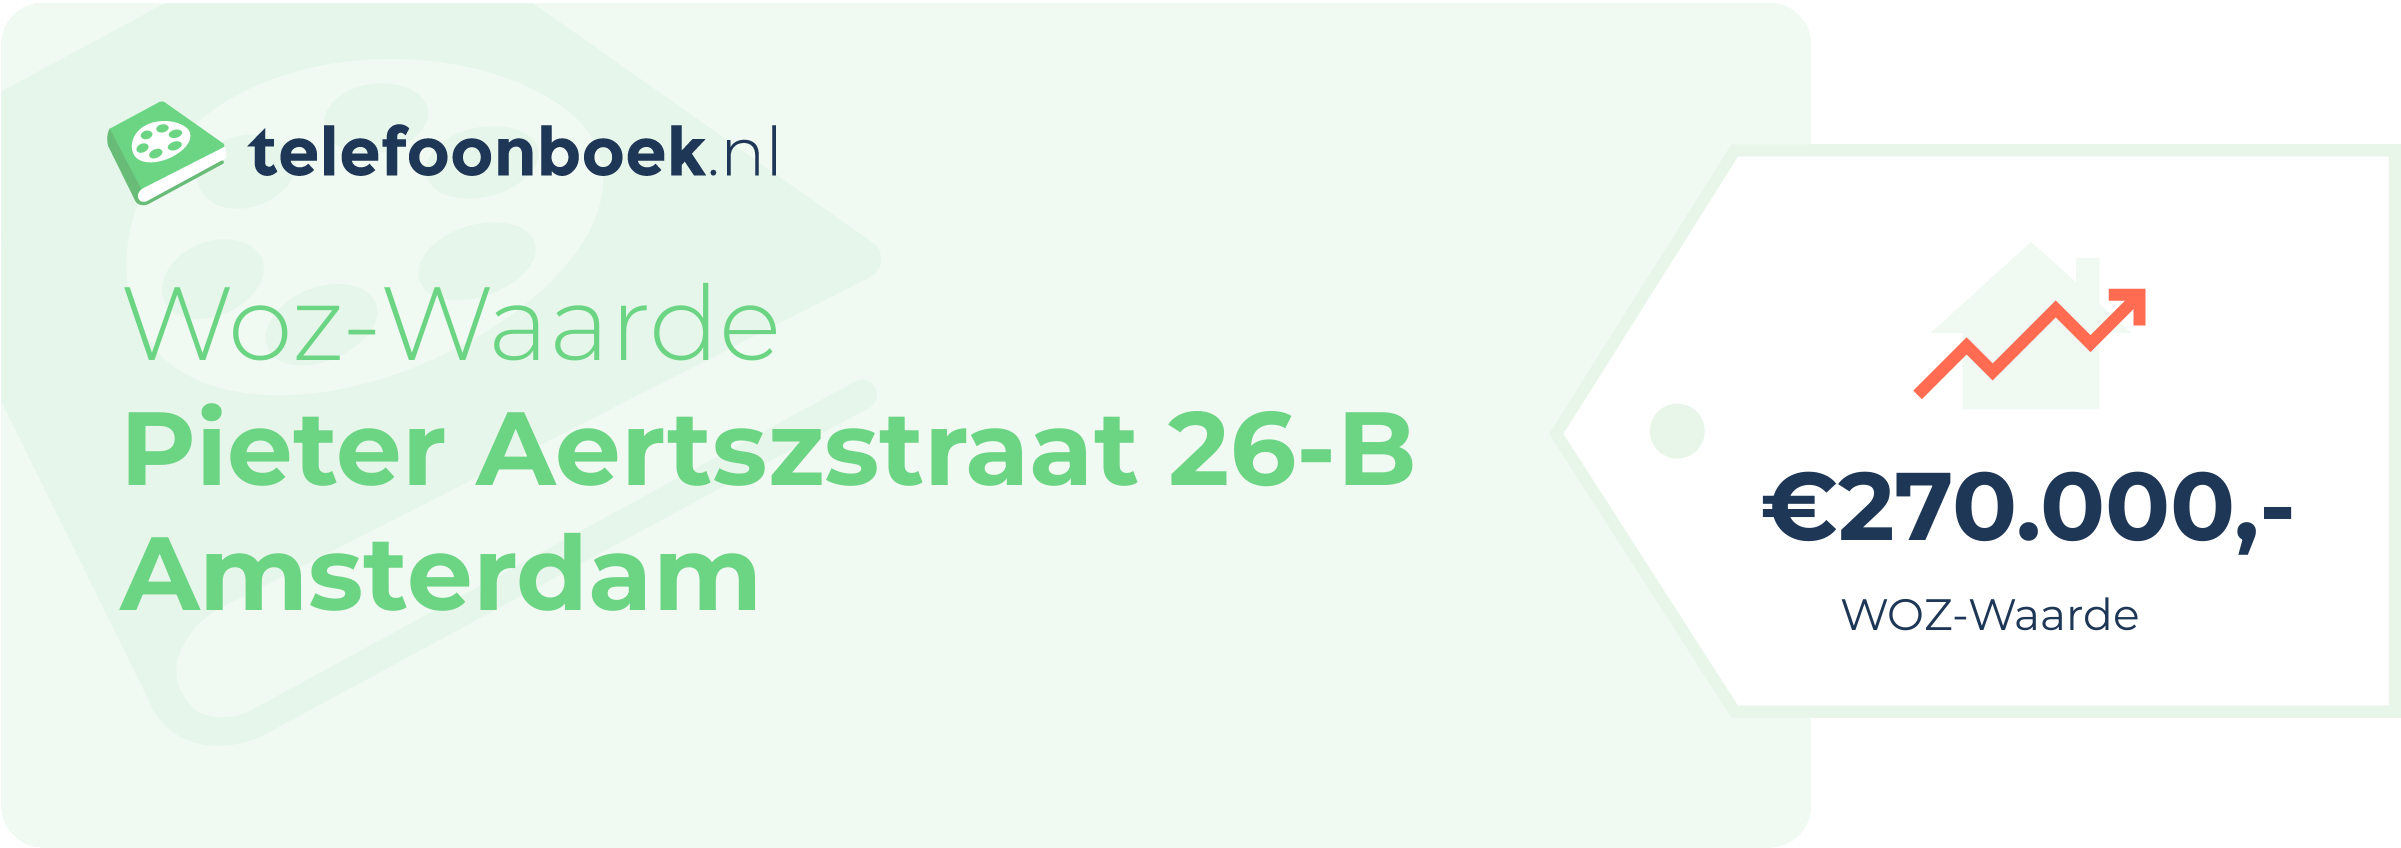 WOZ-waarde Pieter Aertszstraat 26-B Amsterdam